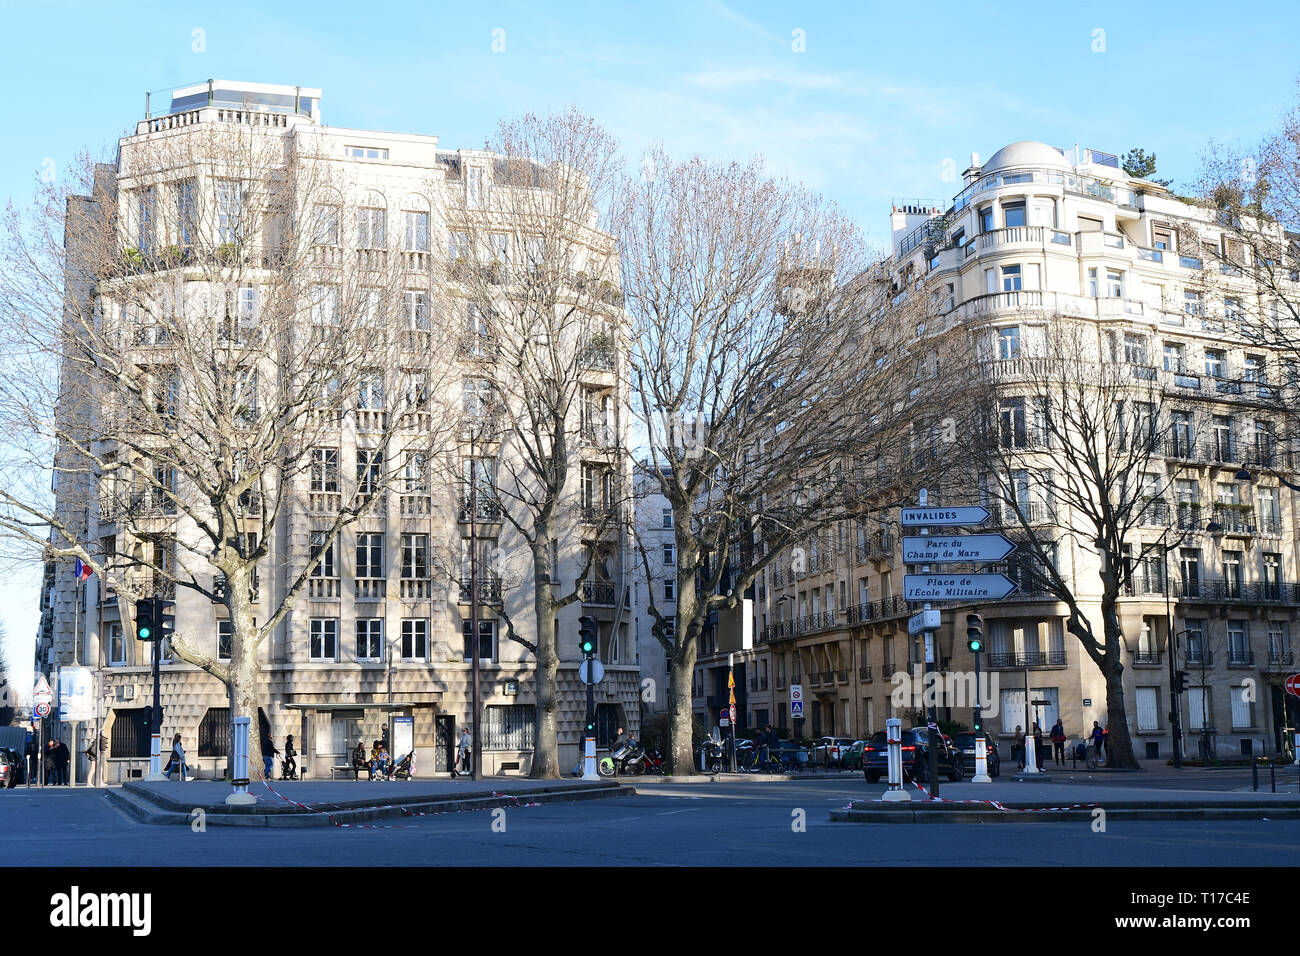 PARIS - FRANKREICH - Feb 24, 2019: Die Architektur von Paris hat den Blick und das Gefühl von vielen seiner historischen Stadtviertel und Straßen erhalten, obwohl es Stockfoto